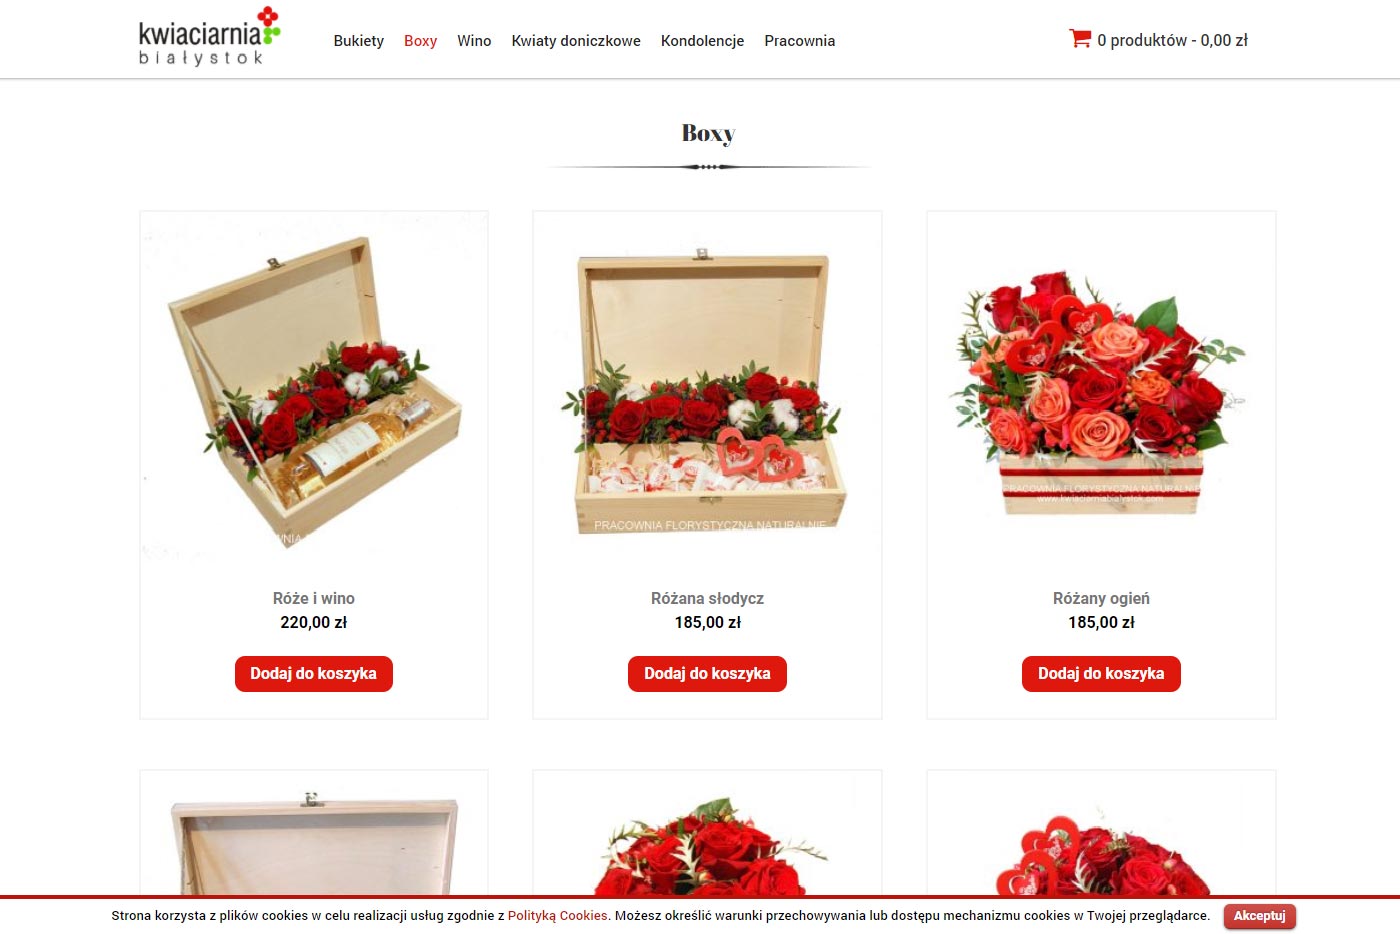 kwiaciarniabialystok-pl-strony-www-sklepy-internetowe-białystok-evion-agencja-reklamowa-marketingowa2